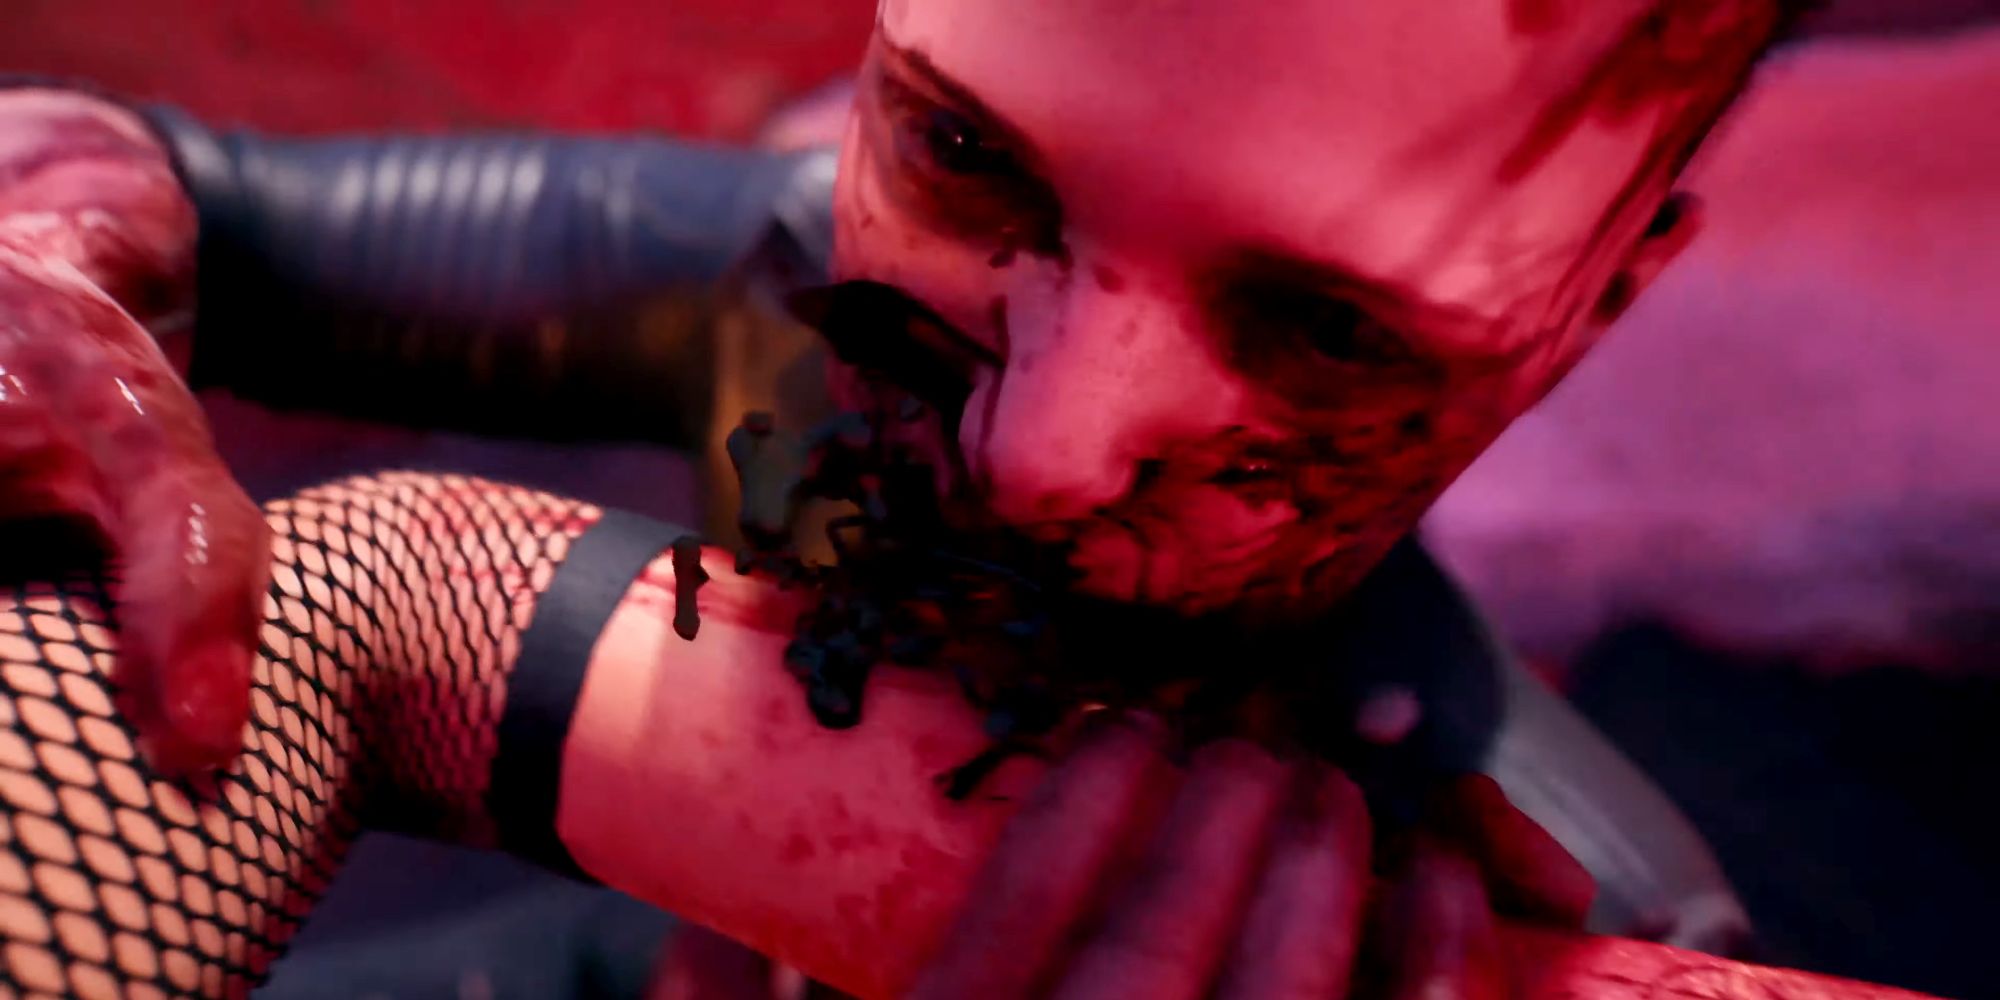 Uma perspectiva em primeira pessoa mostrando o personagem do jogador Dead Island 2 sendo mordido no braço por um zumbi.